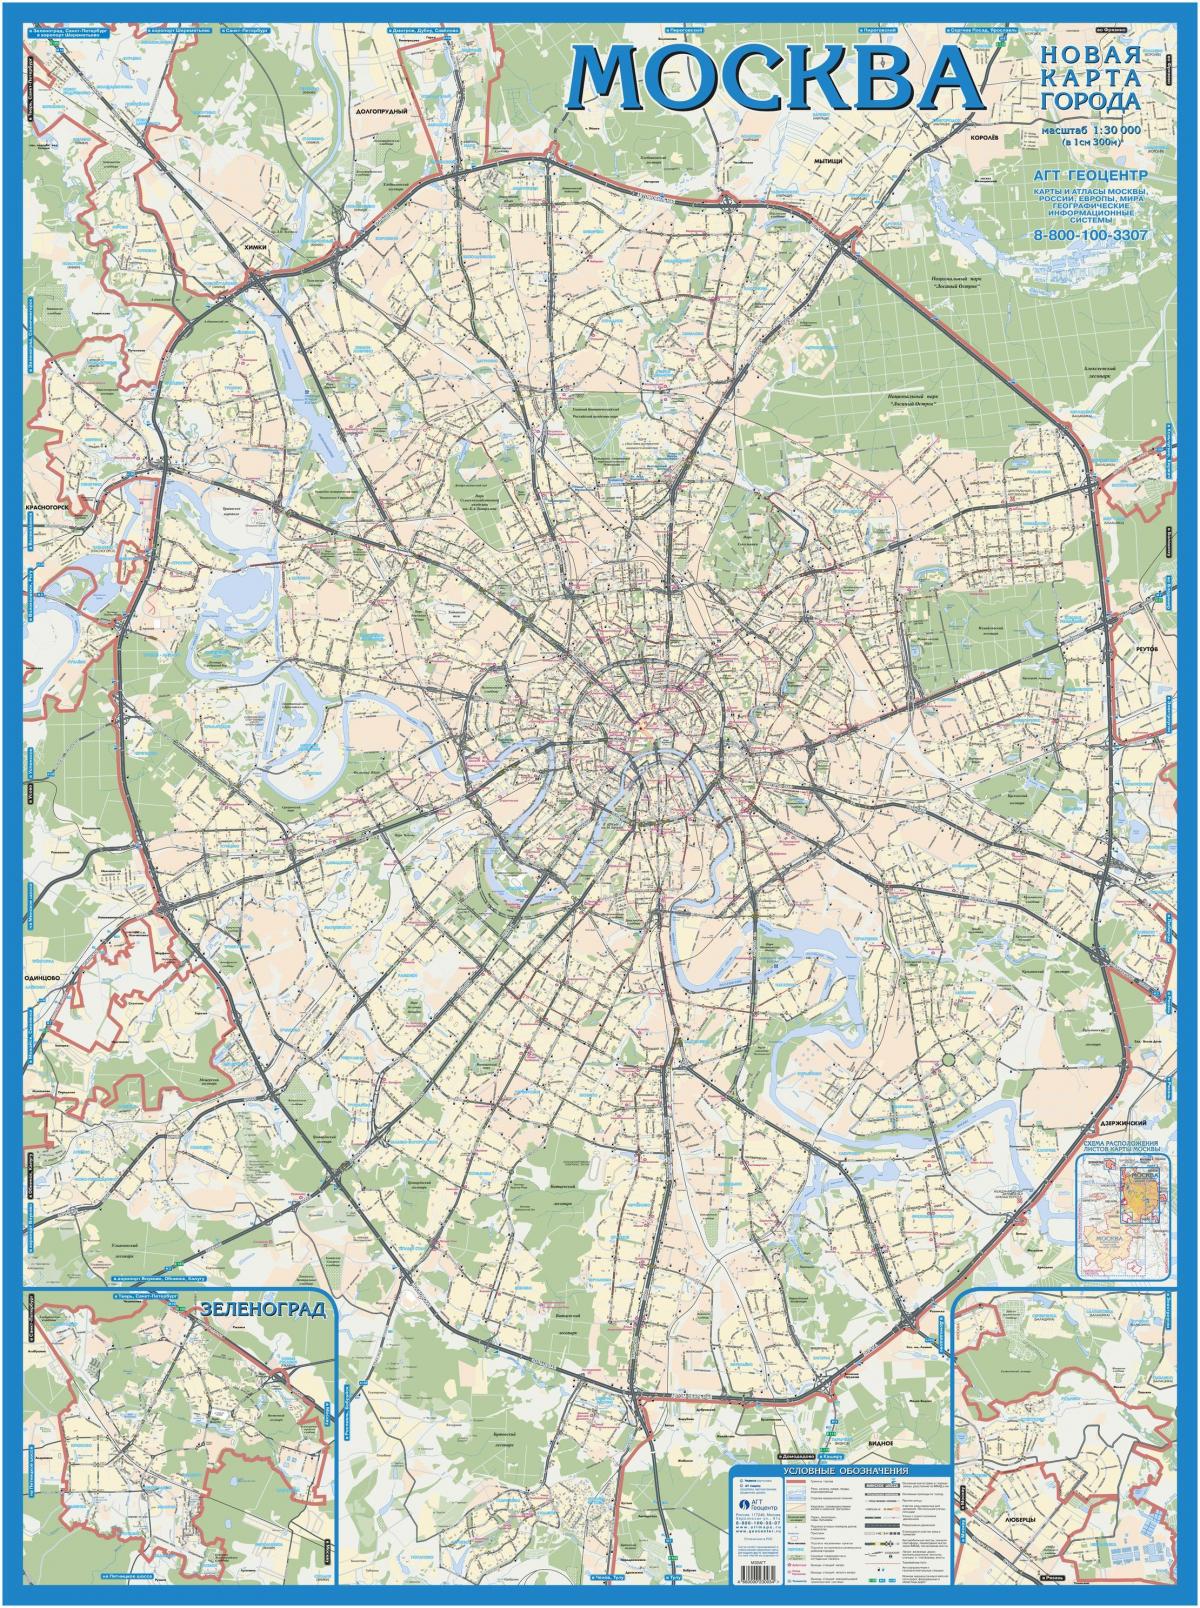 מוסקבה מפה טופוגרפית